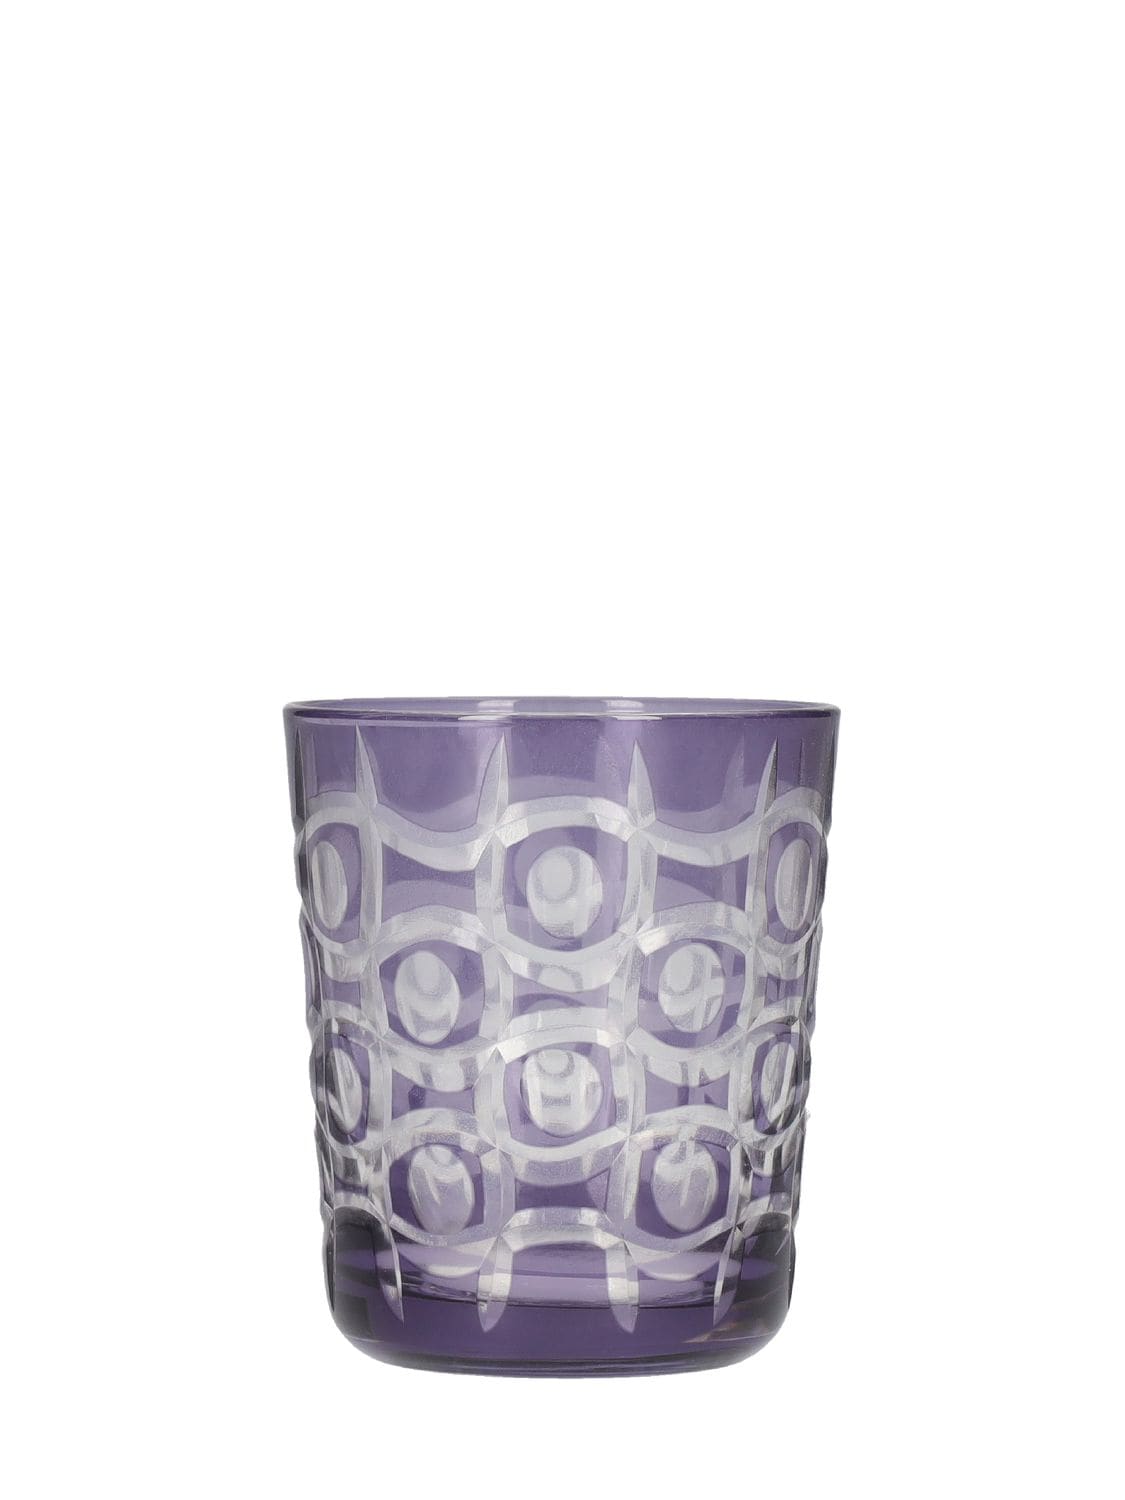 COBALT MIX玻璃杯6个套装